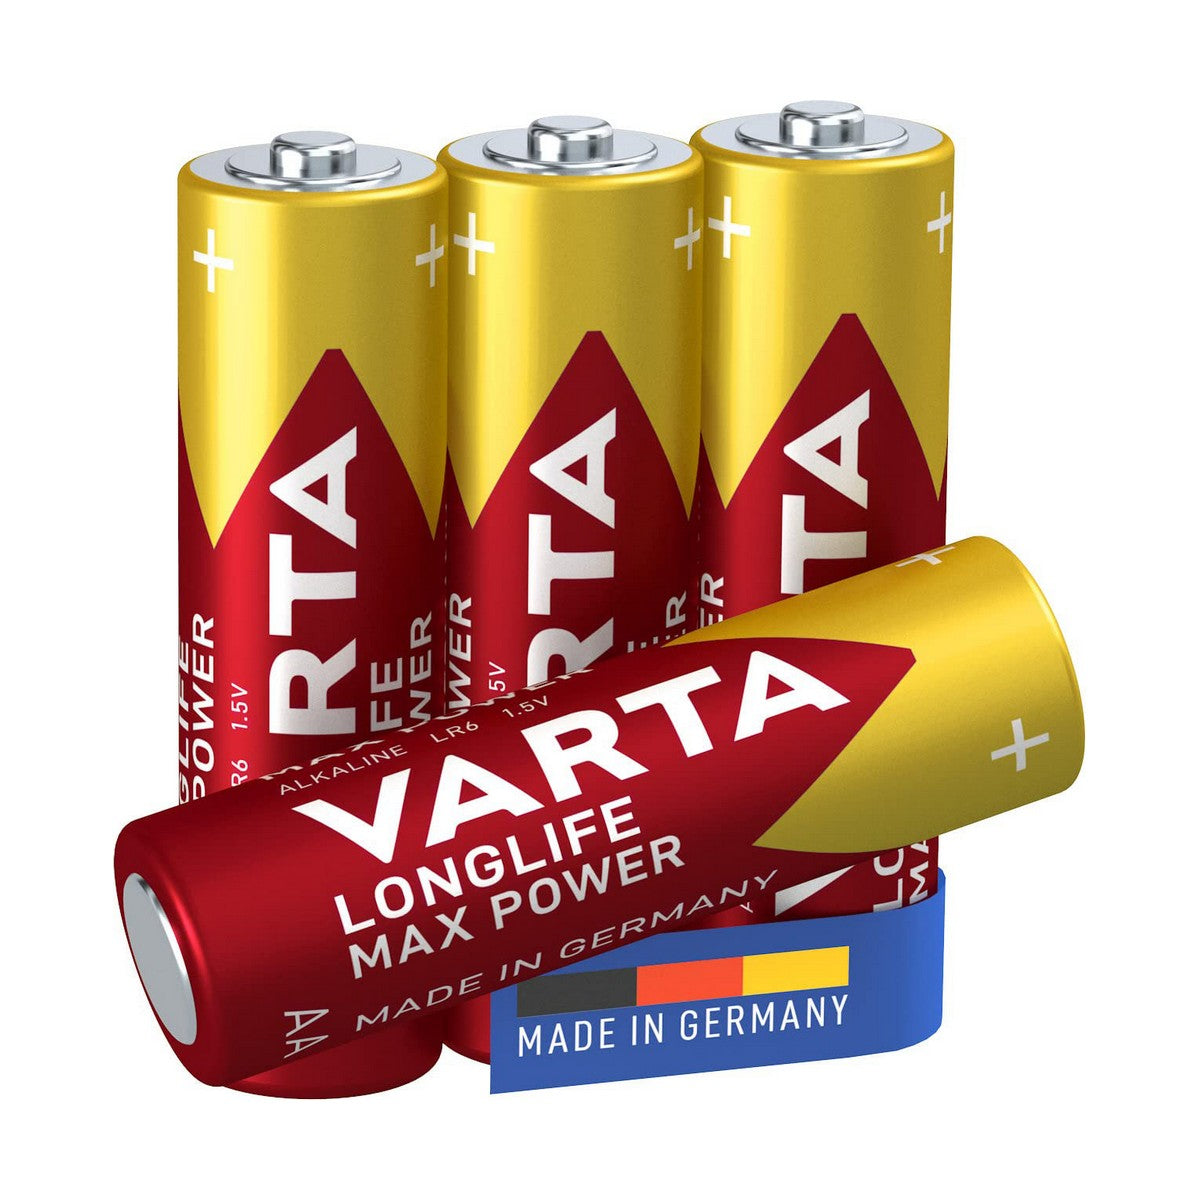 Batterien Varta AA